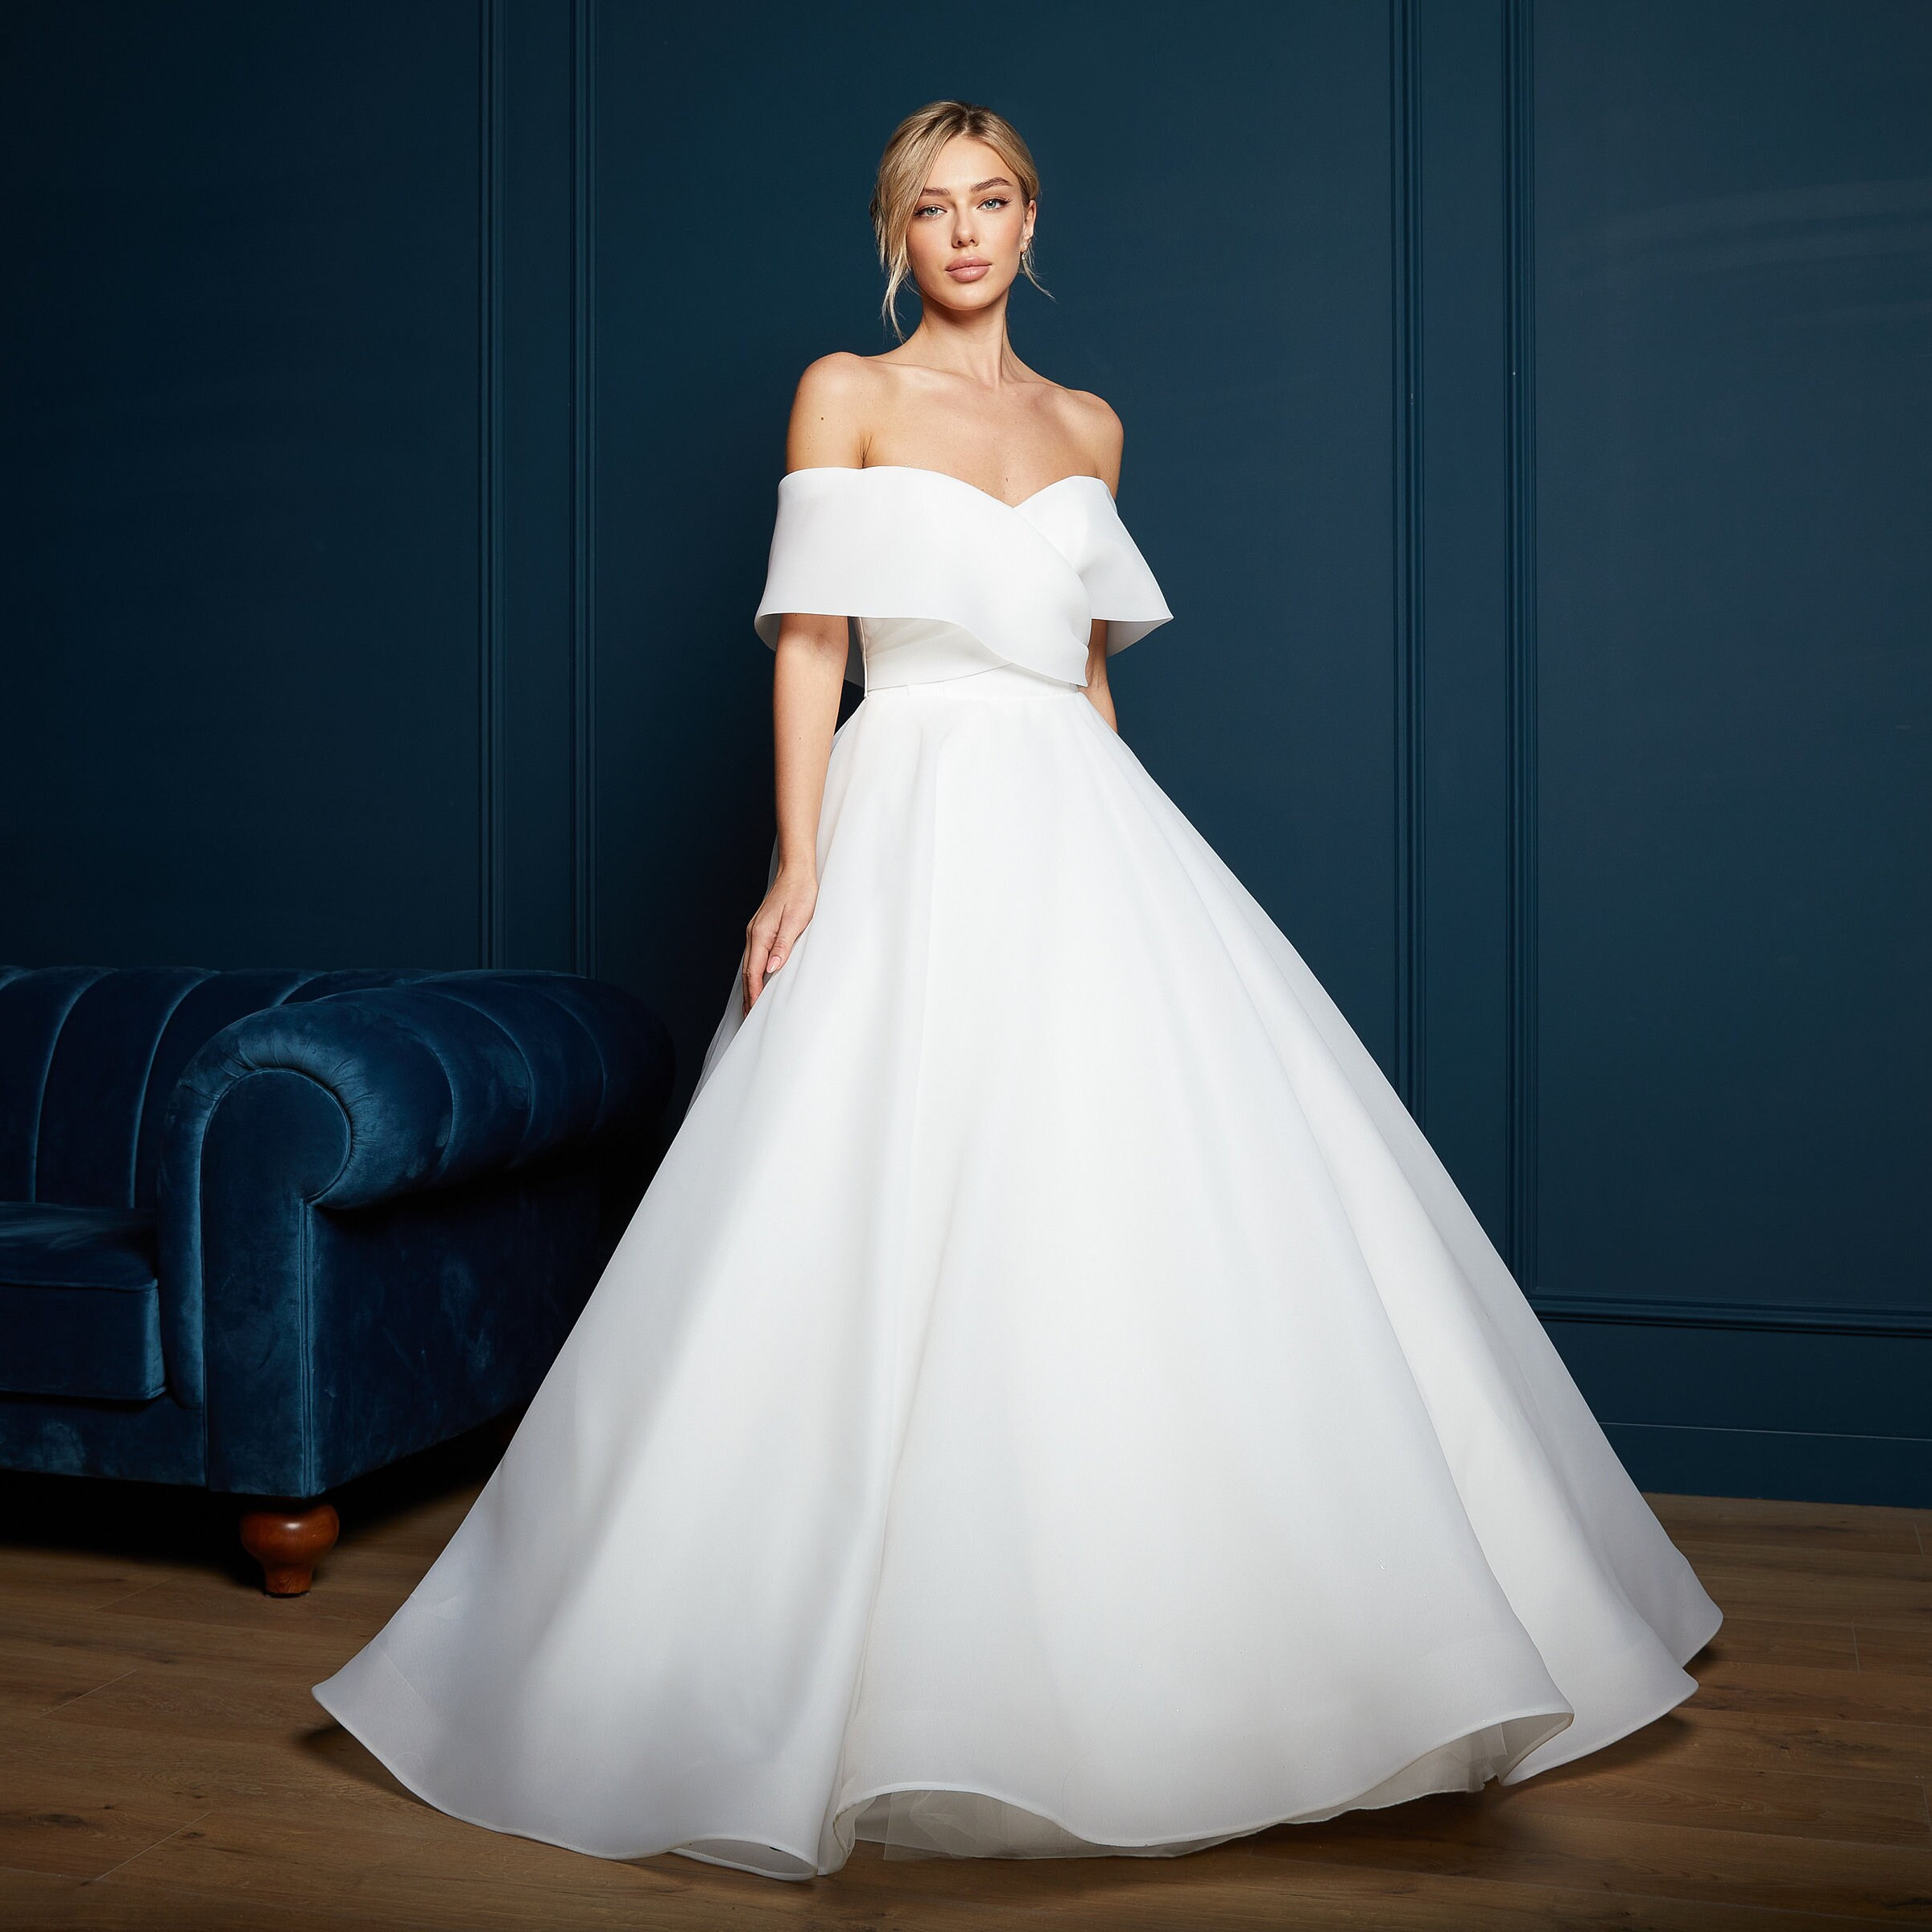 Gorgeous Off-the-shoulder Aline Ball Gown Wedding Dress | Hochzeitskleid,  Kleider hochzeit, Prinzessin kleid hochzeit